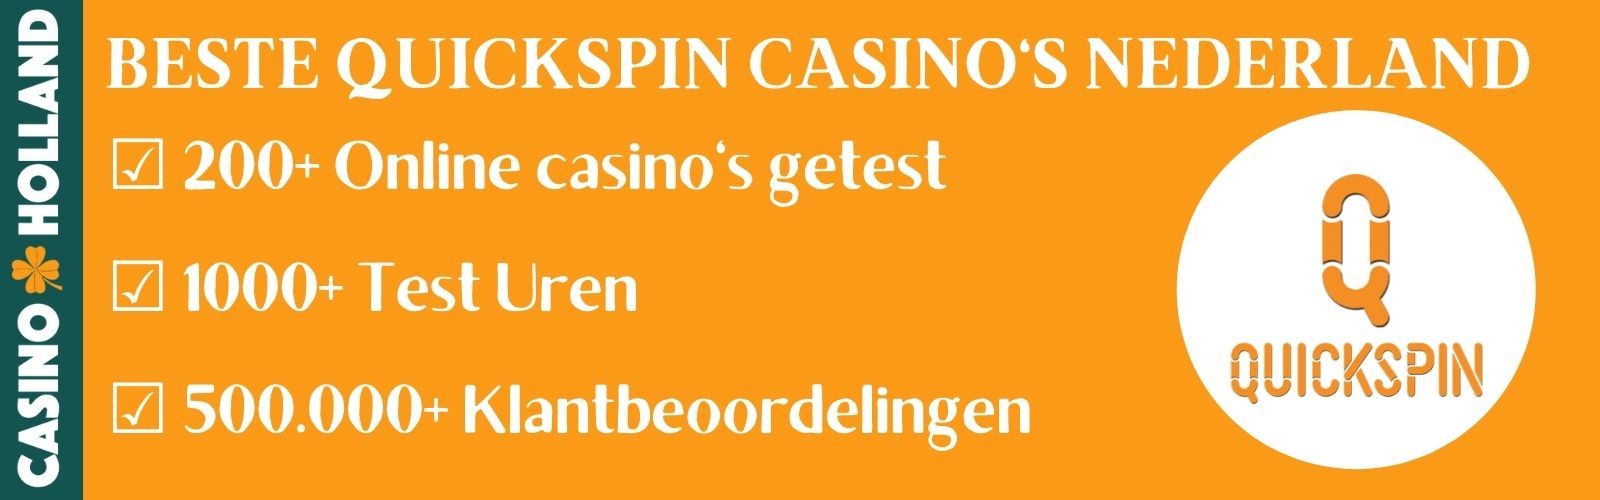 Quickspin Casino